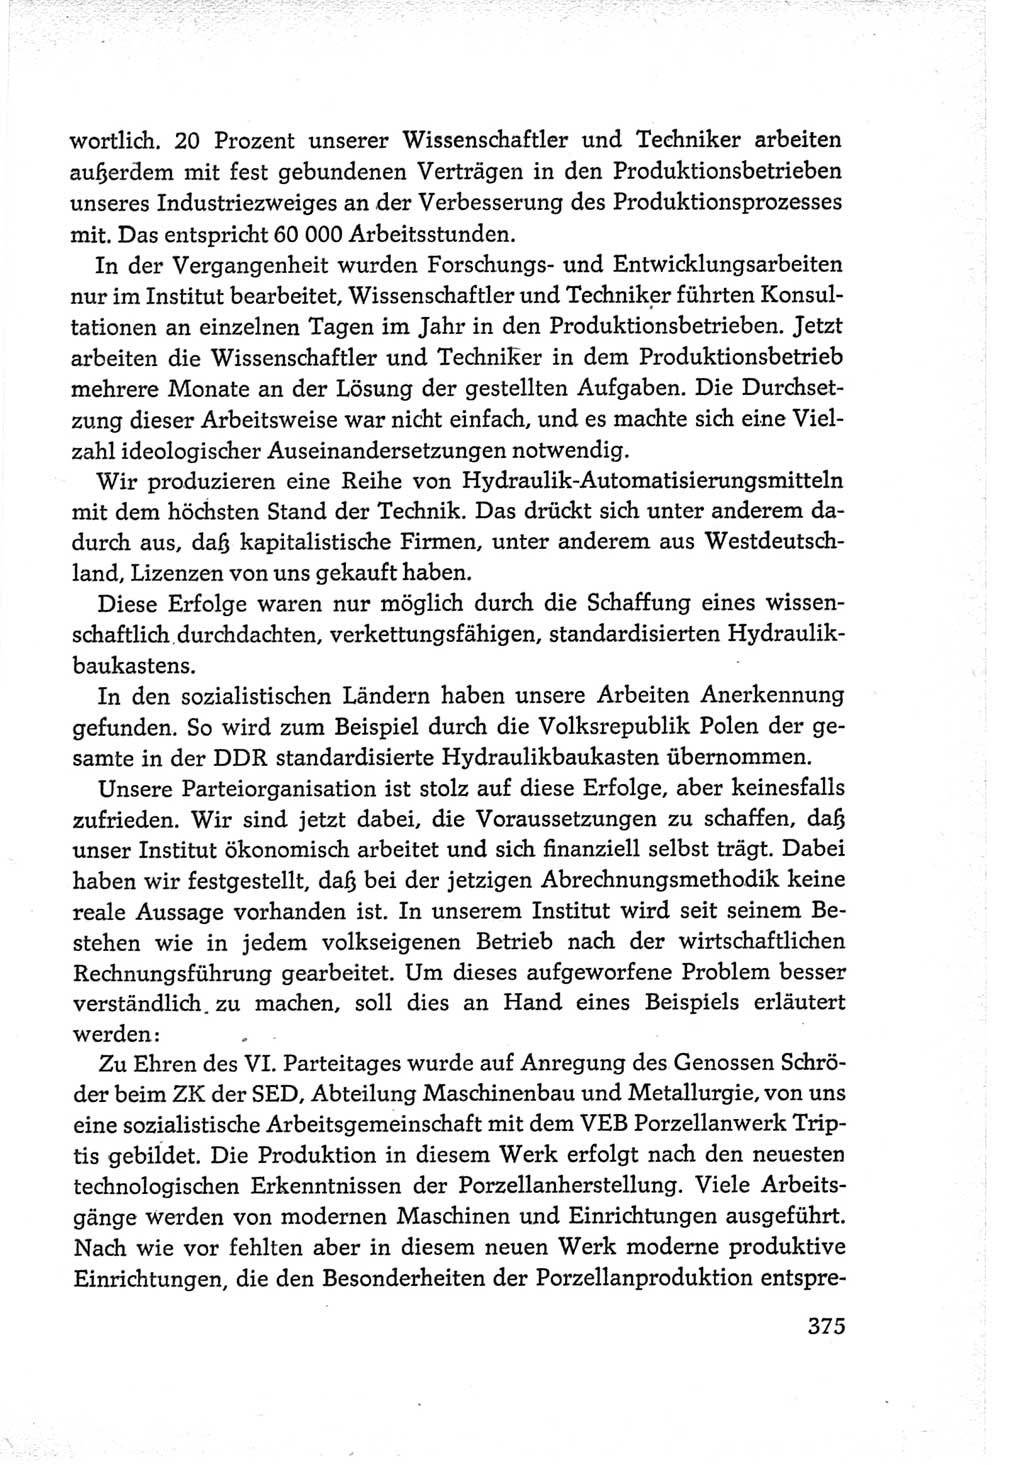 Protokoll der Verhandlungen des Ⅵ. Parteitages der Sozialistischen Einheitspartei Deutschlands (SED) [Deutsche Demokratische Republik (DDR)] 1963, Band Ⅲ, Seite 375 (Prot. Verh. Ⅵ. PT SED DDR 1963, Bd. Ⅲ, S. 375)